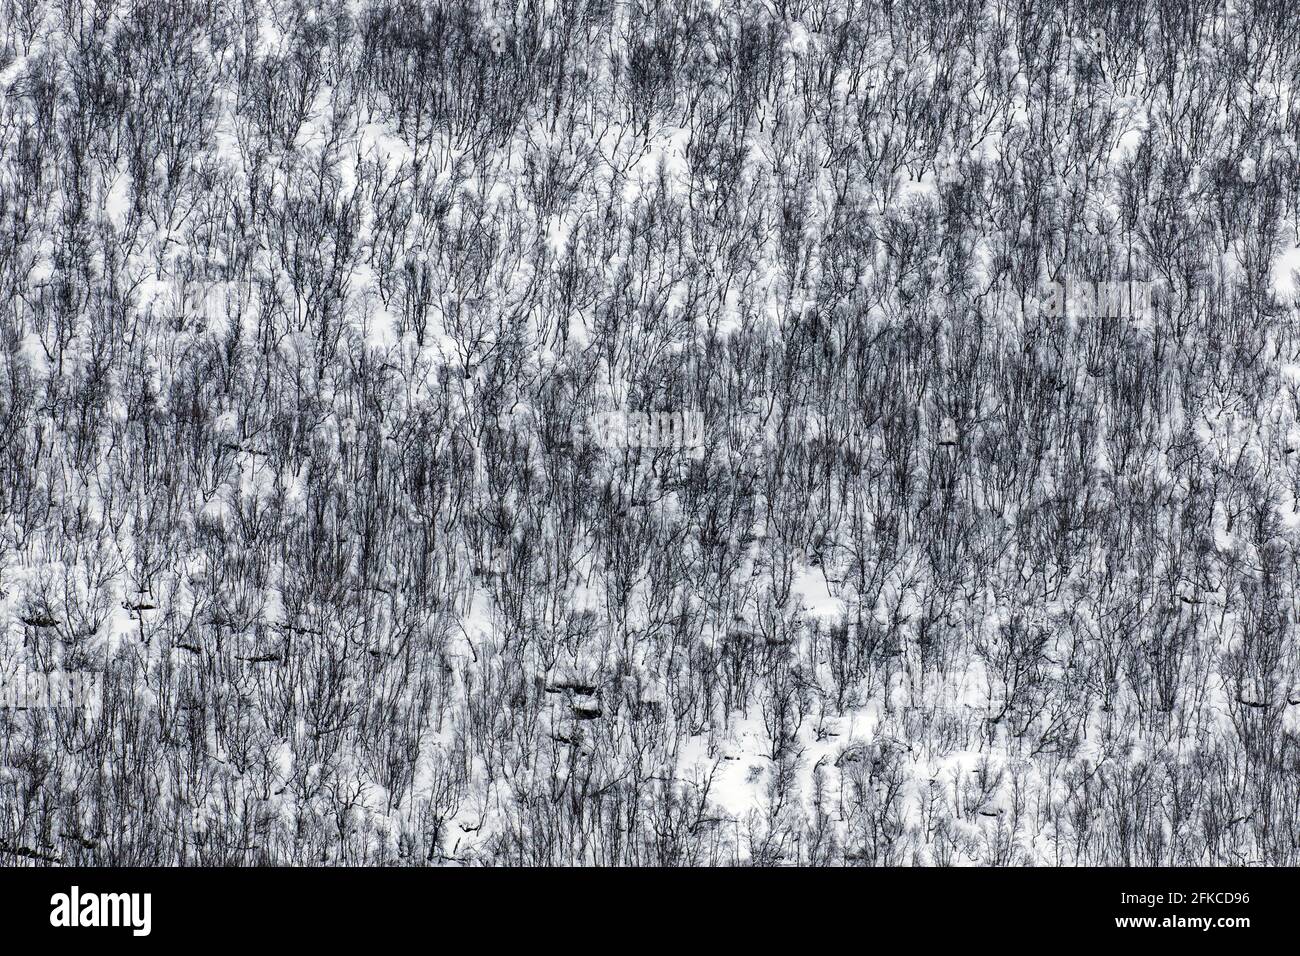 Foto astratta che mostra la vista aerea sugli alberi di betulla nella neve di taiga / foresta boreale in inverno Foto Stock